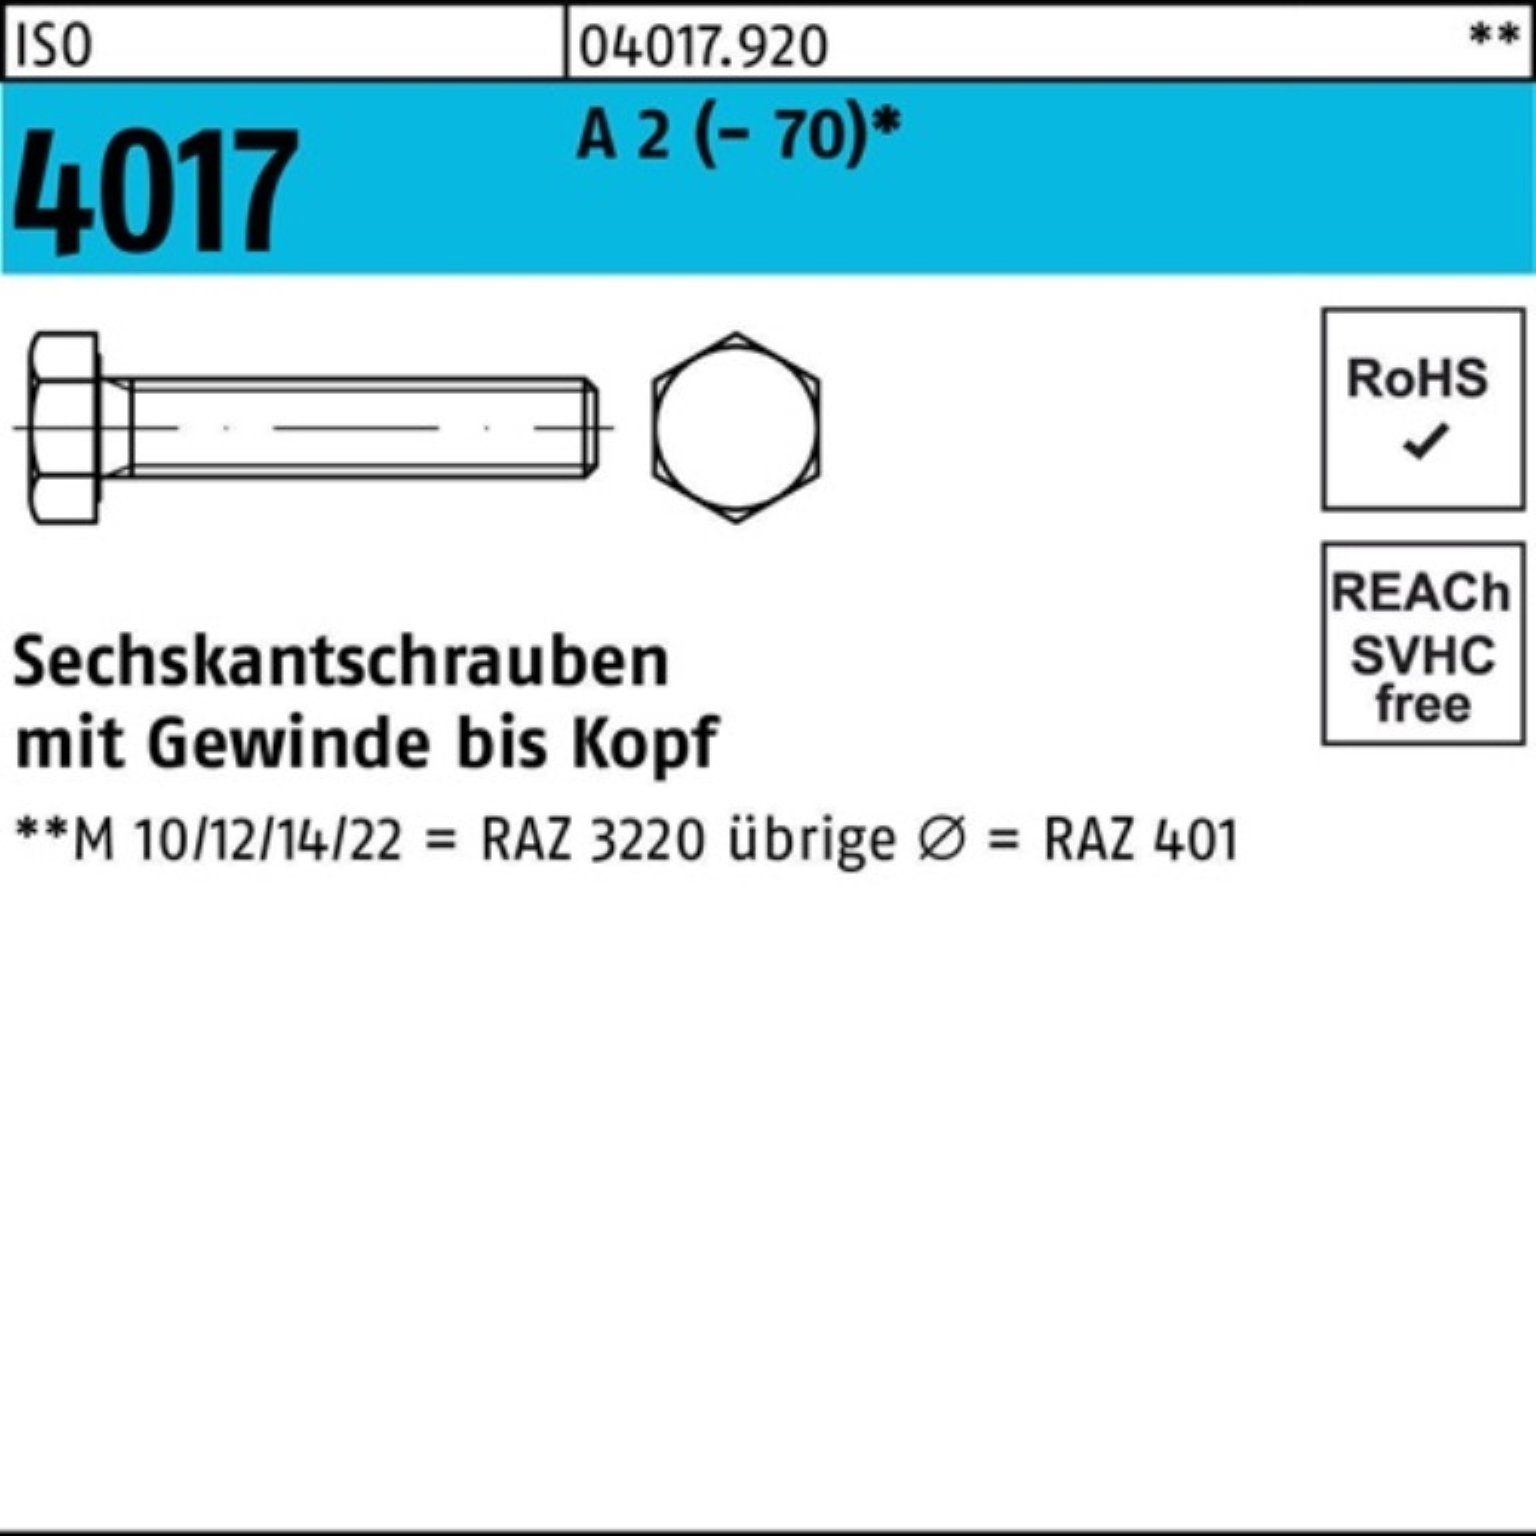 Bufab Sechskantschraube 100er 2 25 (70) M20x A Pack Stück VG ISO 60 Sechskantschraube 4017